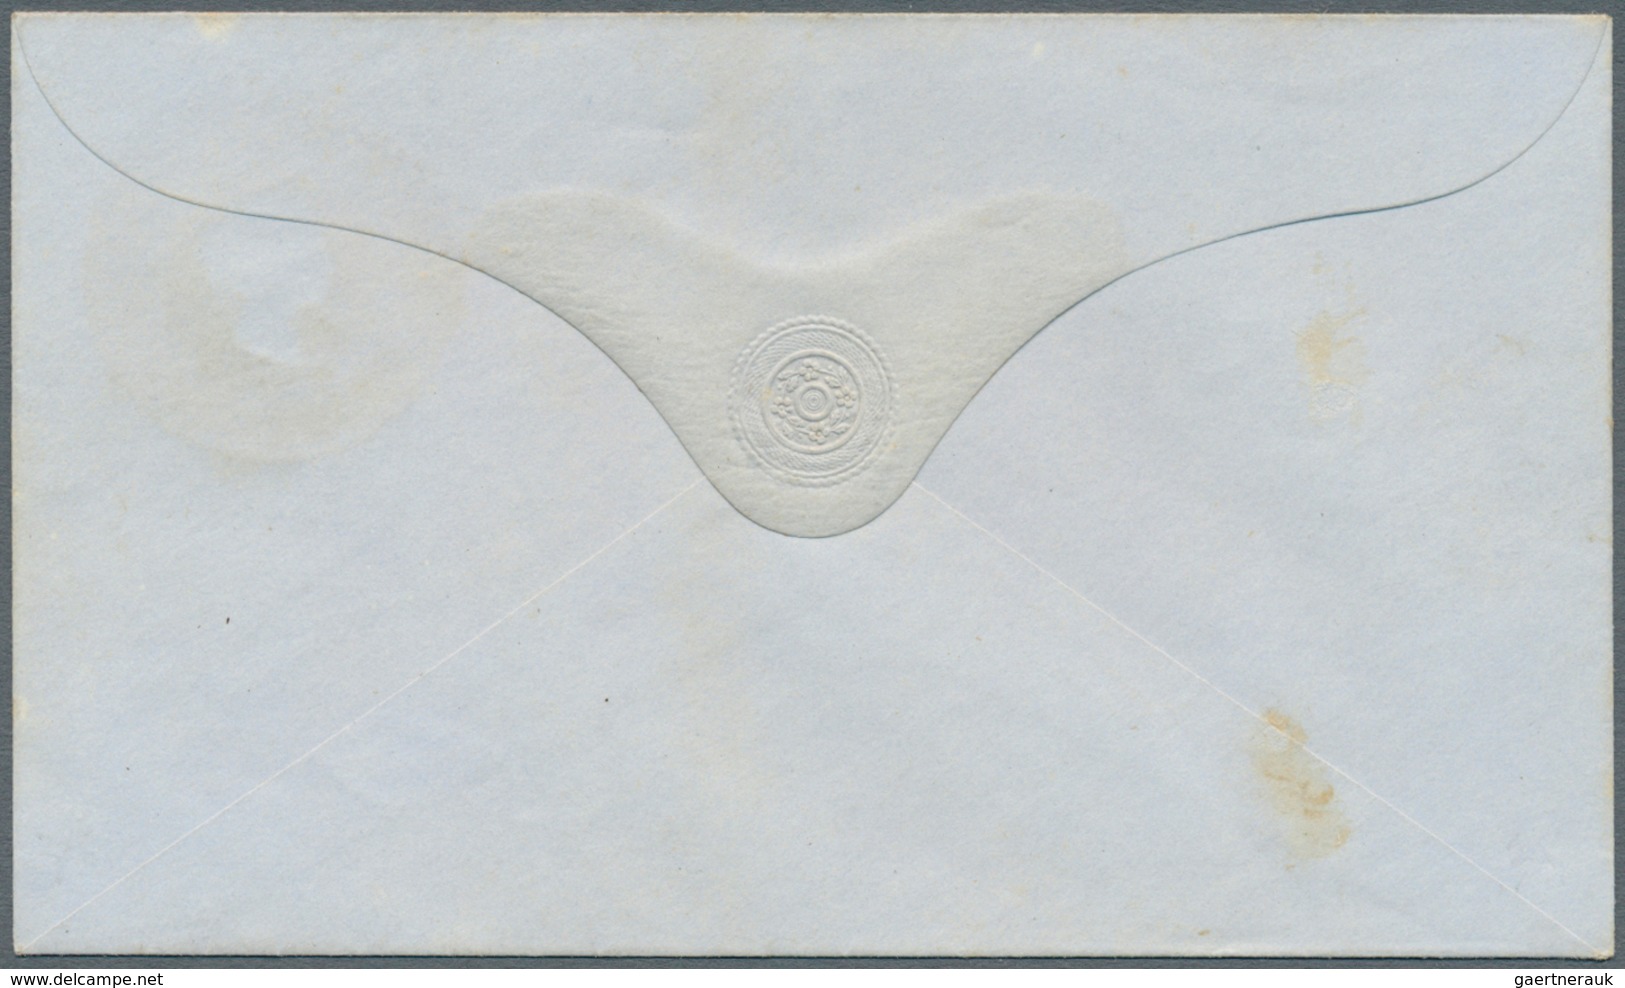 Mauritius: 1862, QV stationery envelopes (5): 6d (3, HG1a x2, 3d), 9d (2, HG 2, 2a) plus 6d (HG1) ov